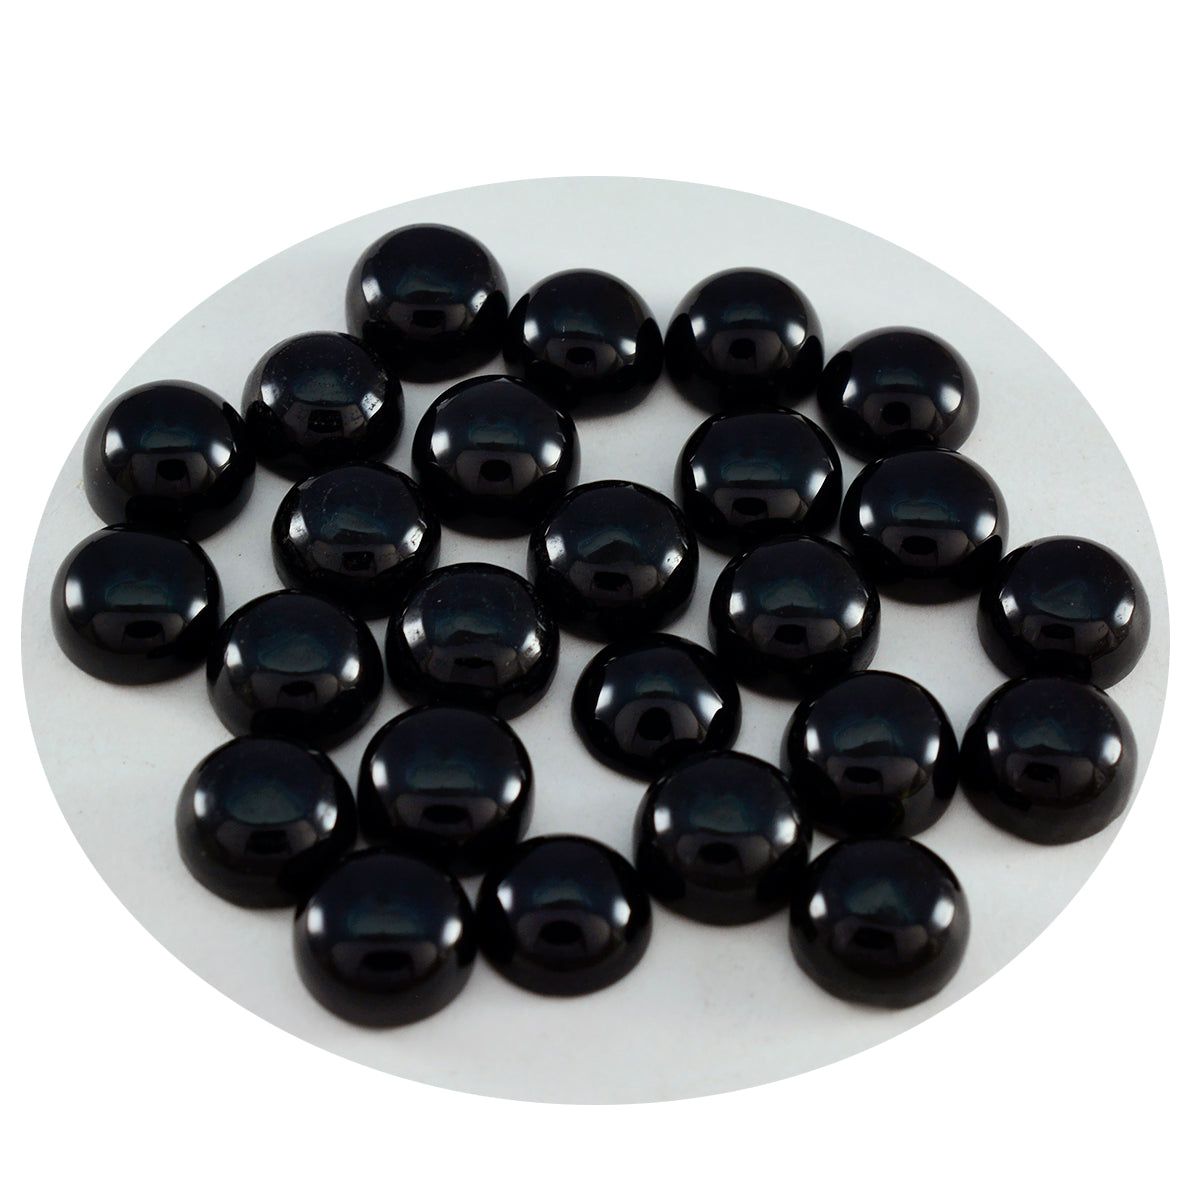 riyogems 1pc cabochon onyx noir 6x6 mm forme ronde a1 qualité pierre précieuse en vrac